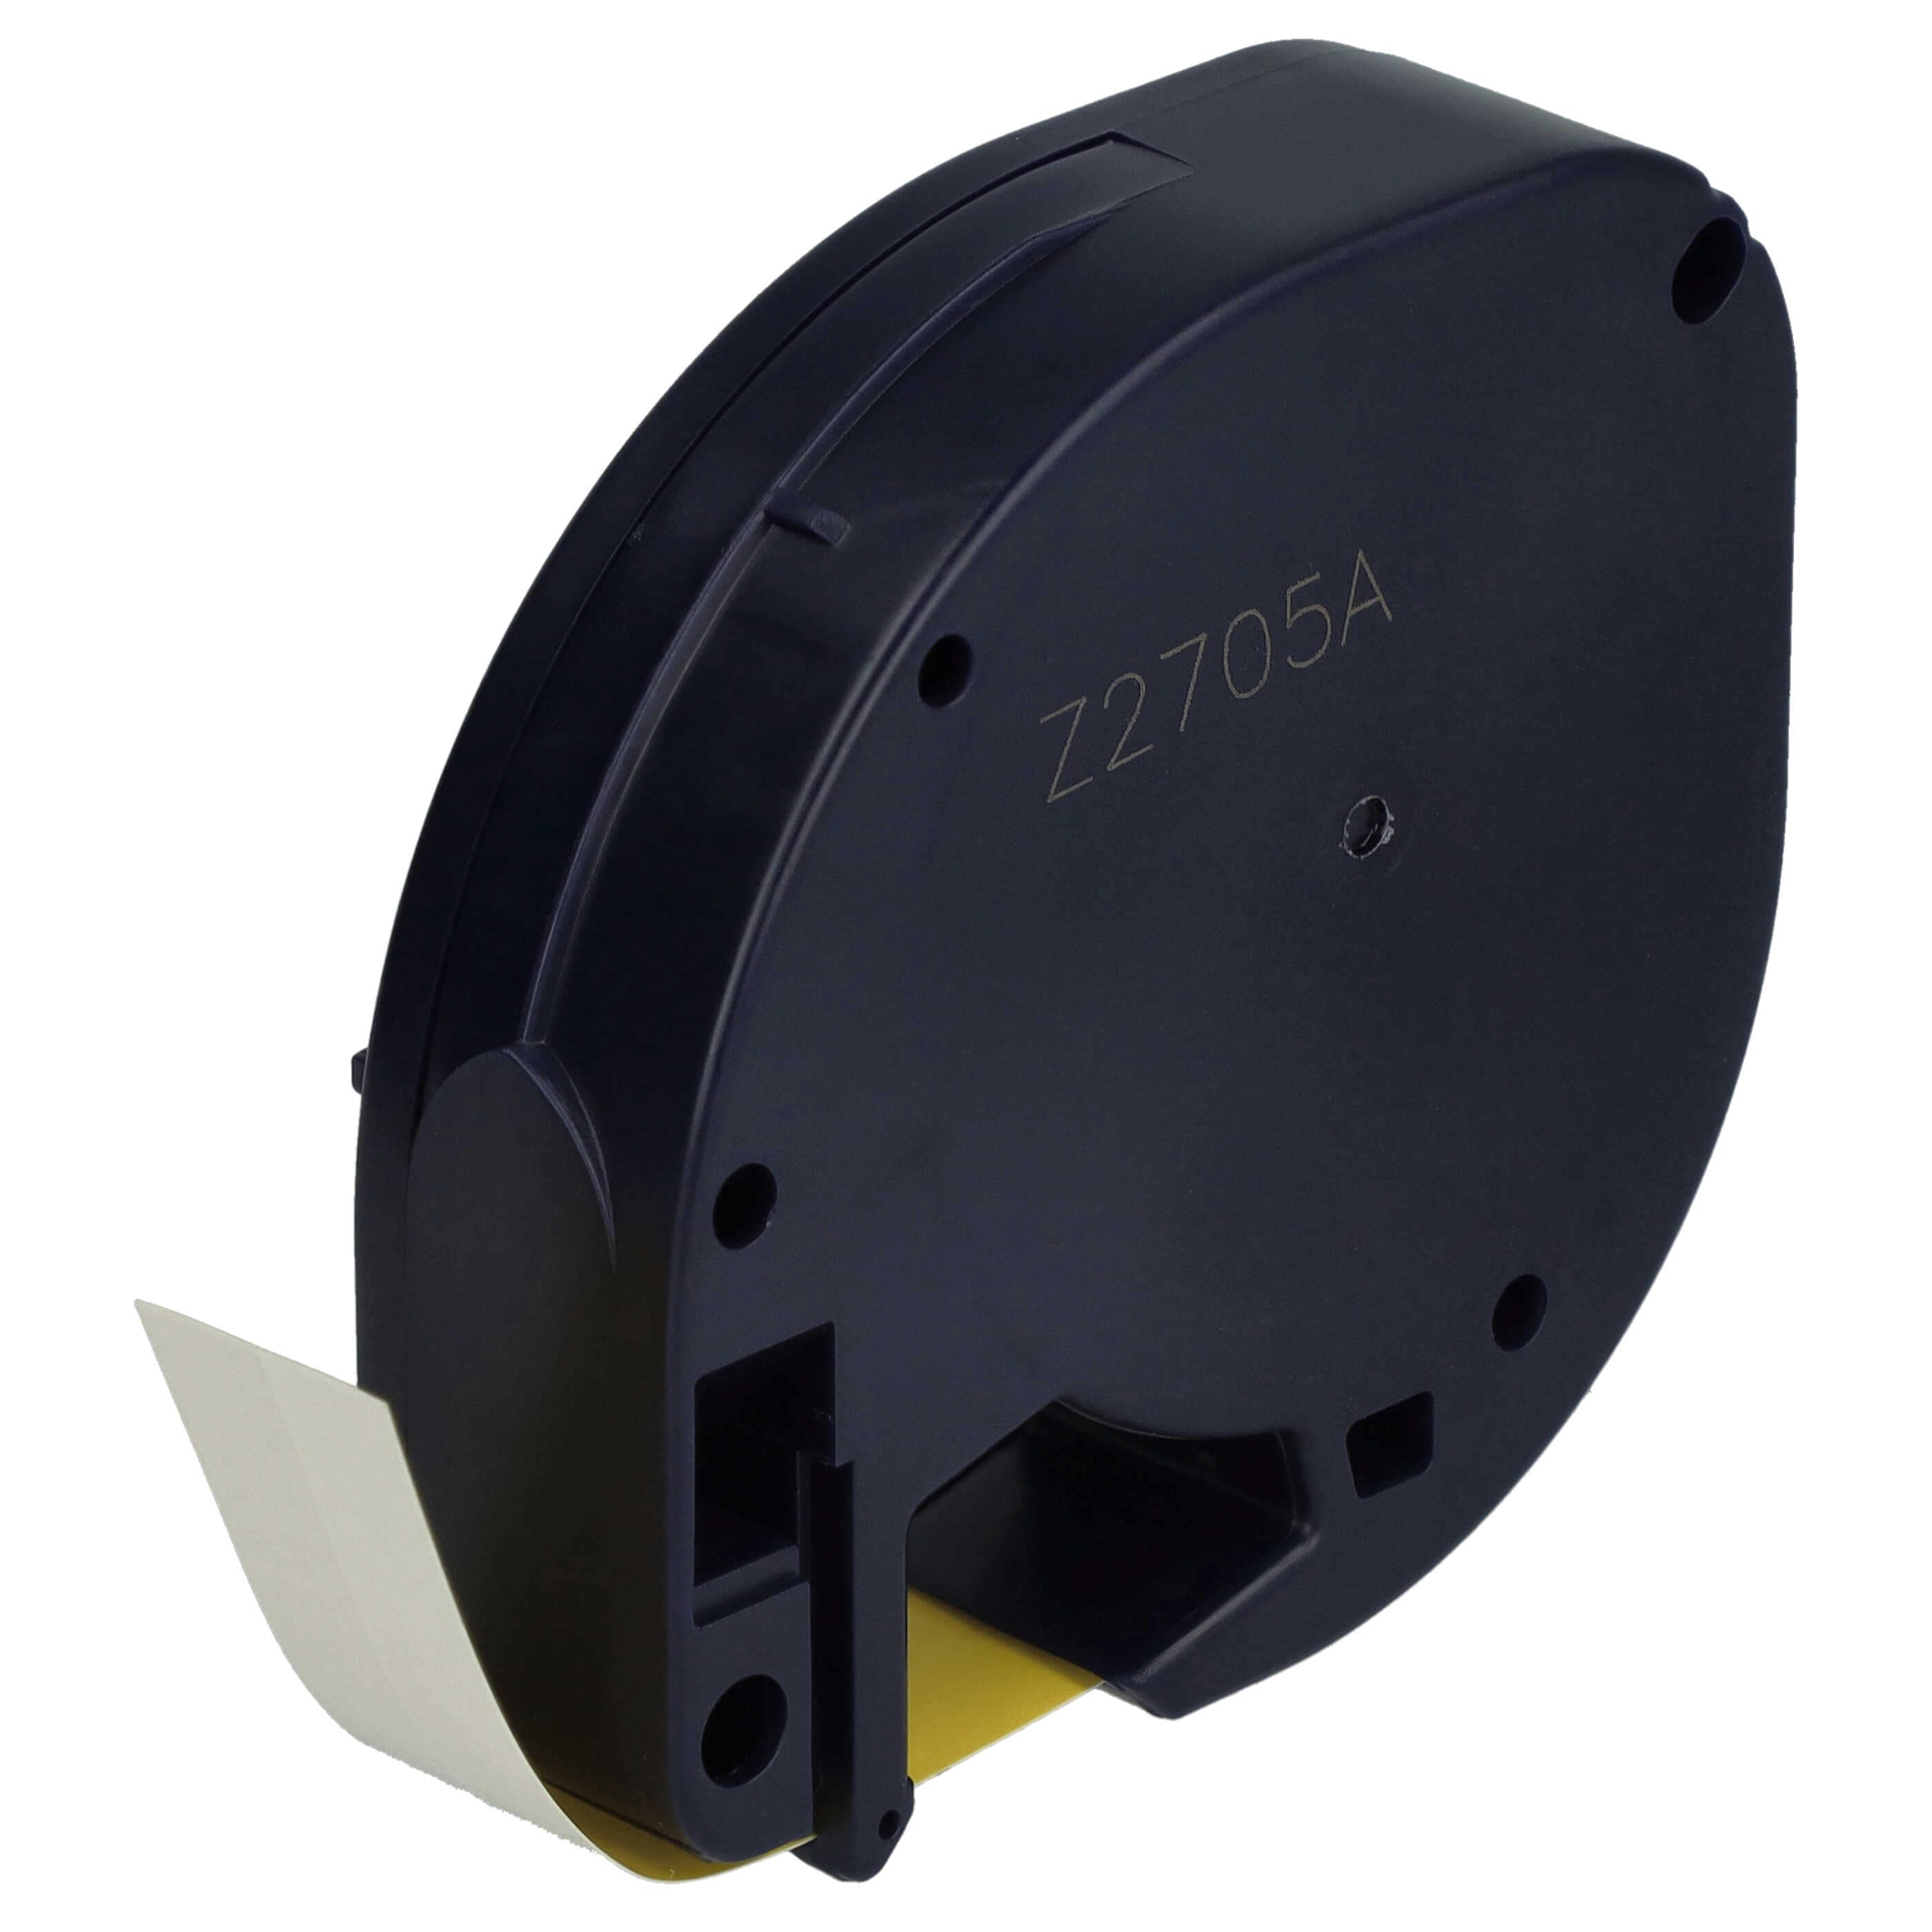 Cassetta nastro plastica sostituisce Dymo 91222 per etichettatrice Dymo 12mm nero su giallo, plastica